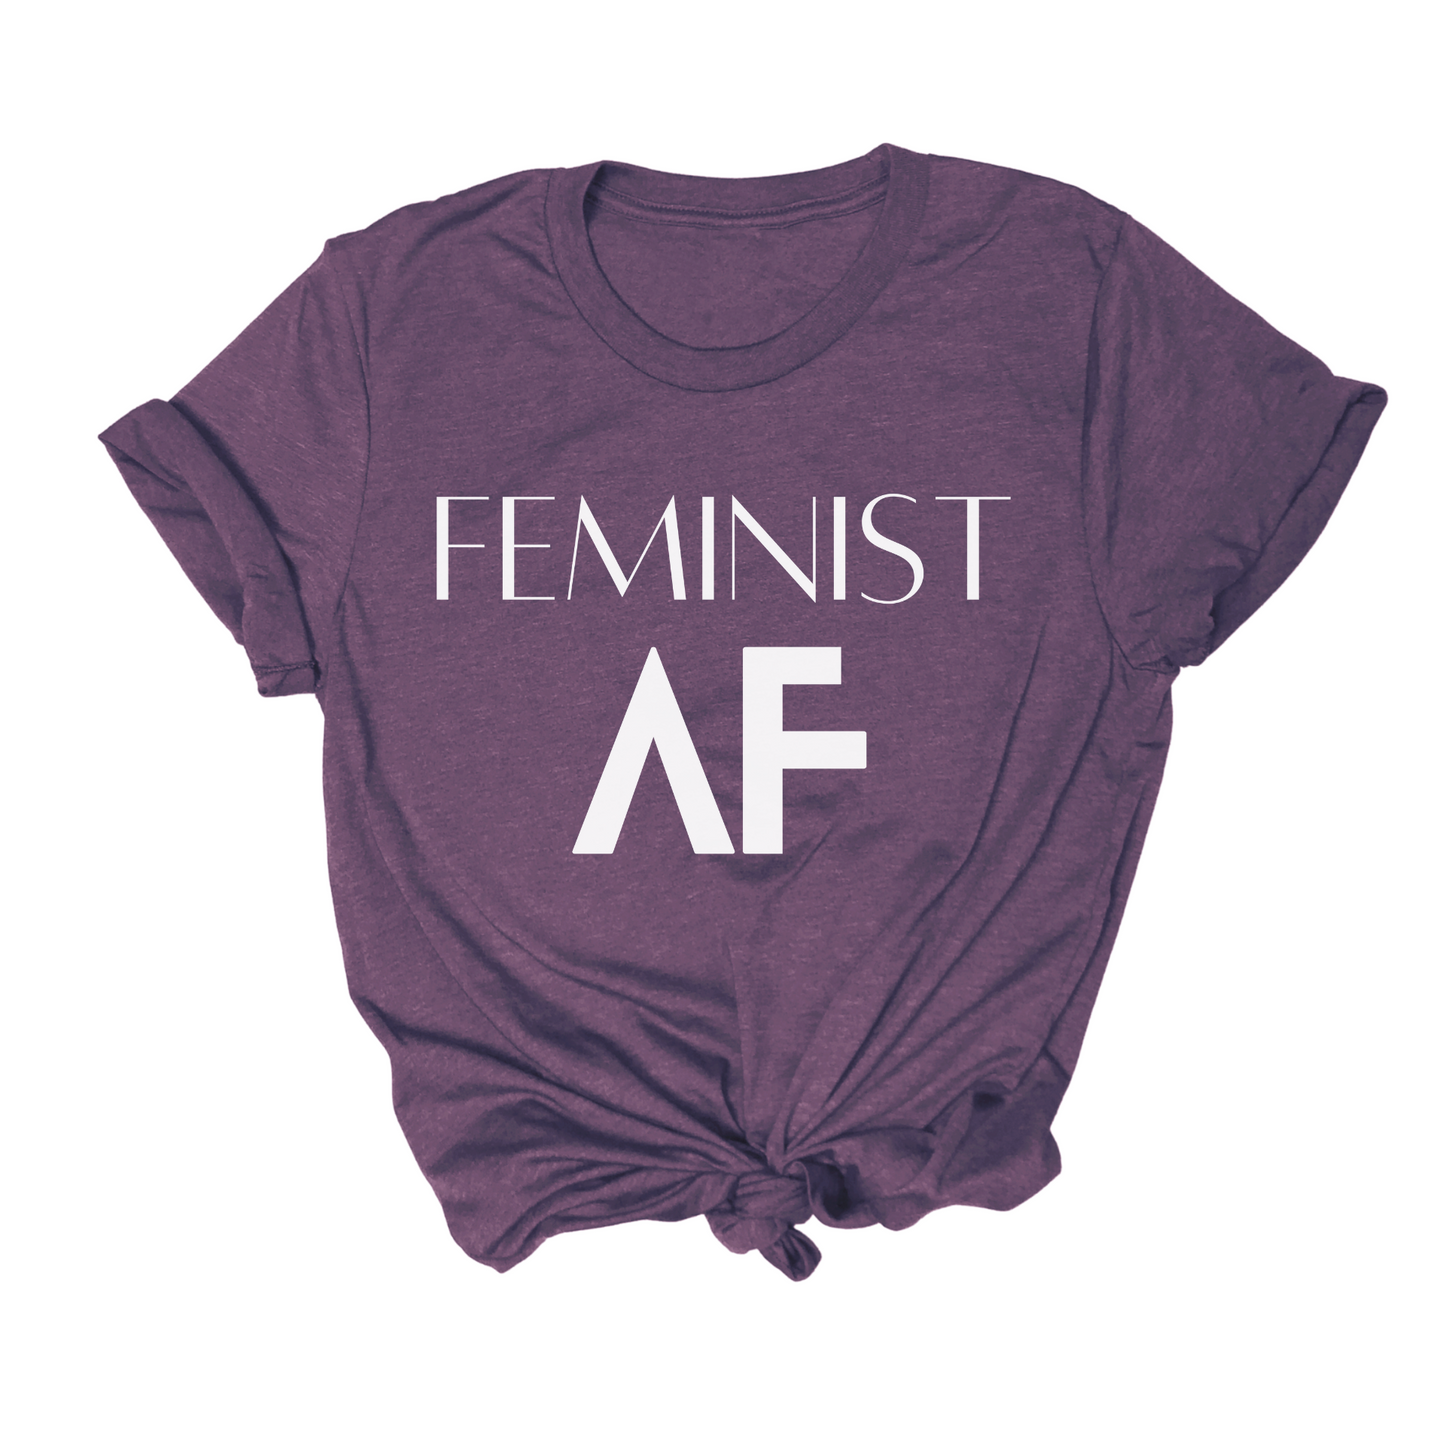 "Feminist AF" Tee